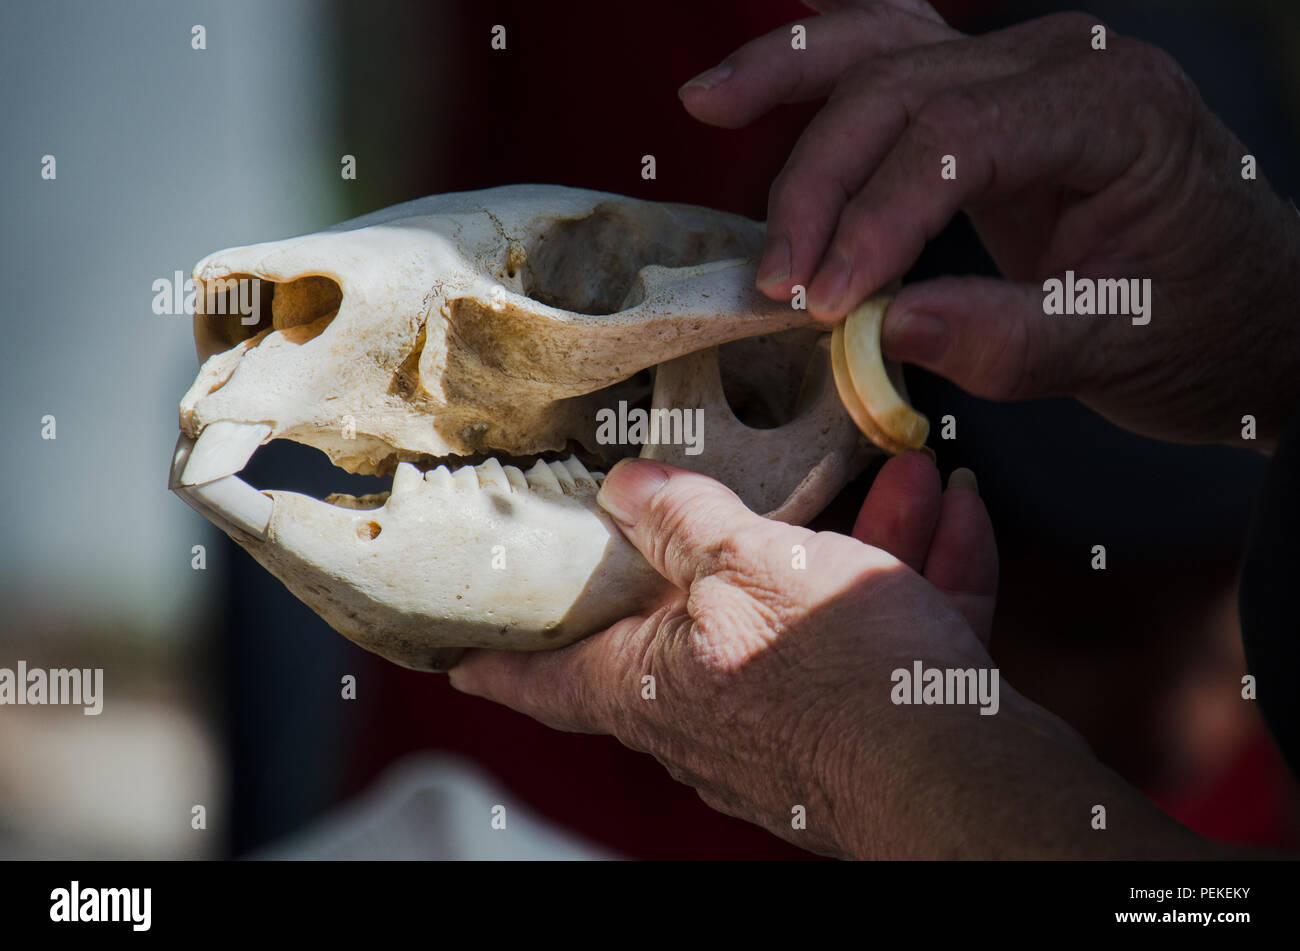 Wombat Schädel in Händen gehalten, wie es für Kinder während der Schulferien im freien pädagogischen Programm auf einheimische australische Tiere angezeigt wird. Stockfoto